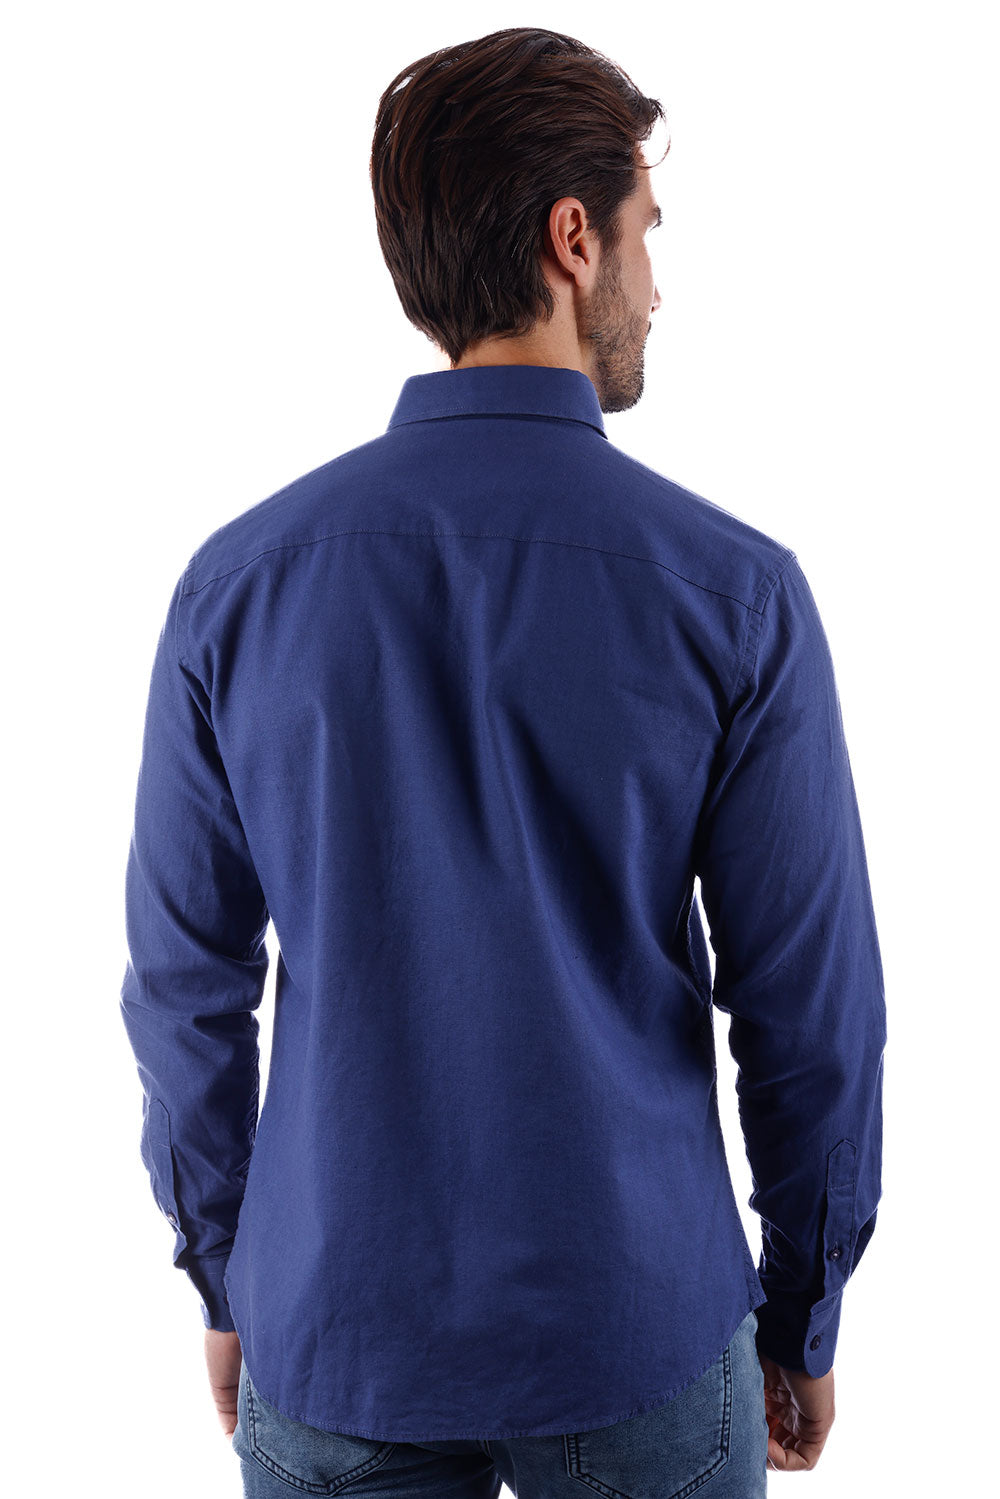 BARABAS Men's Linen Lightweight Button Down Long Sleeve Shirt 4B37 Blue